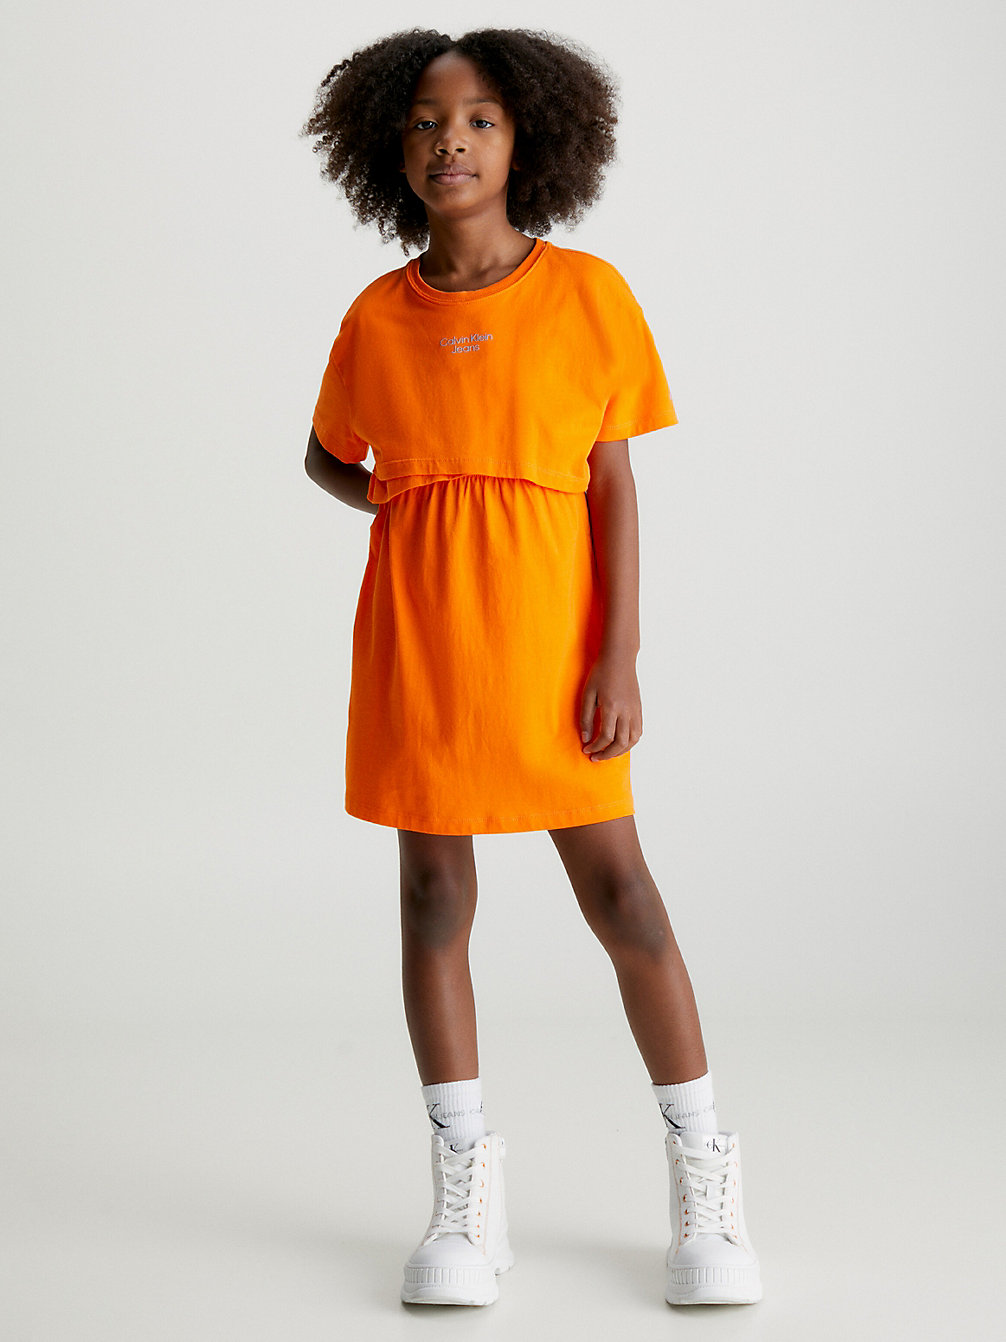 VIBRANT ORANGE Overlap T-Shirt Dress undefined girls Calvin Klein